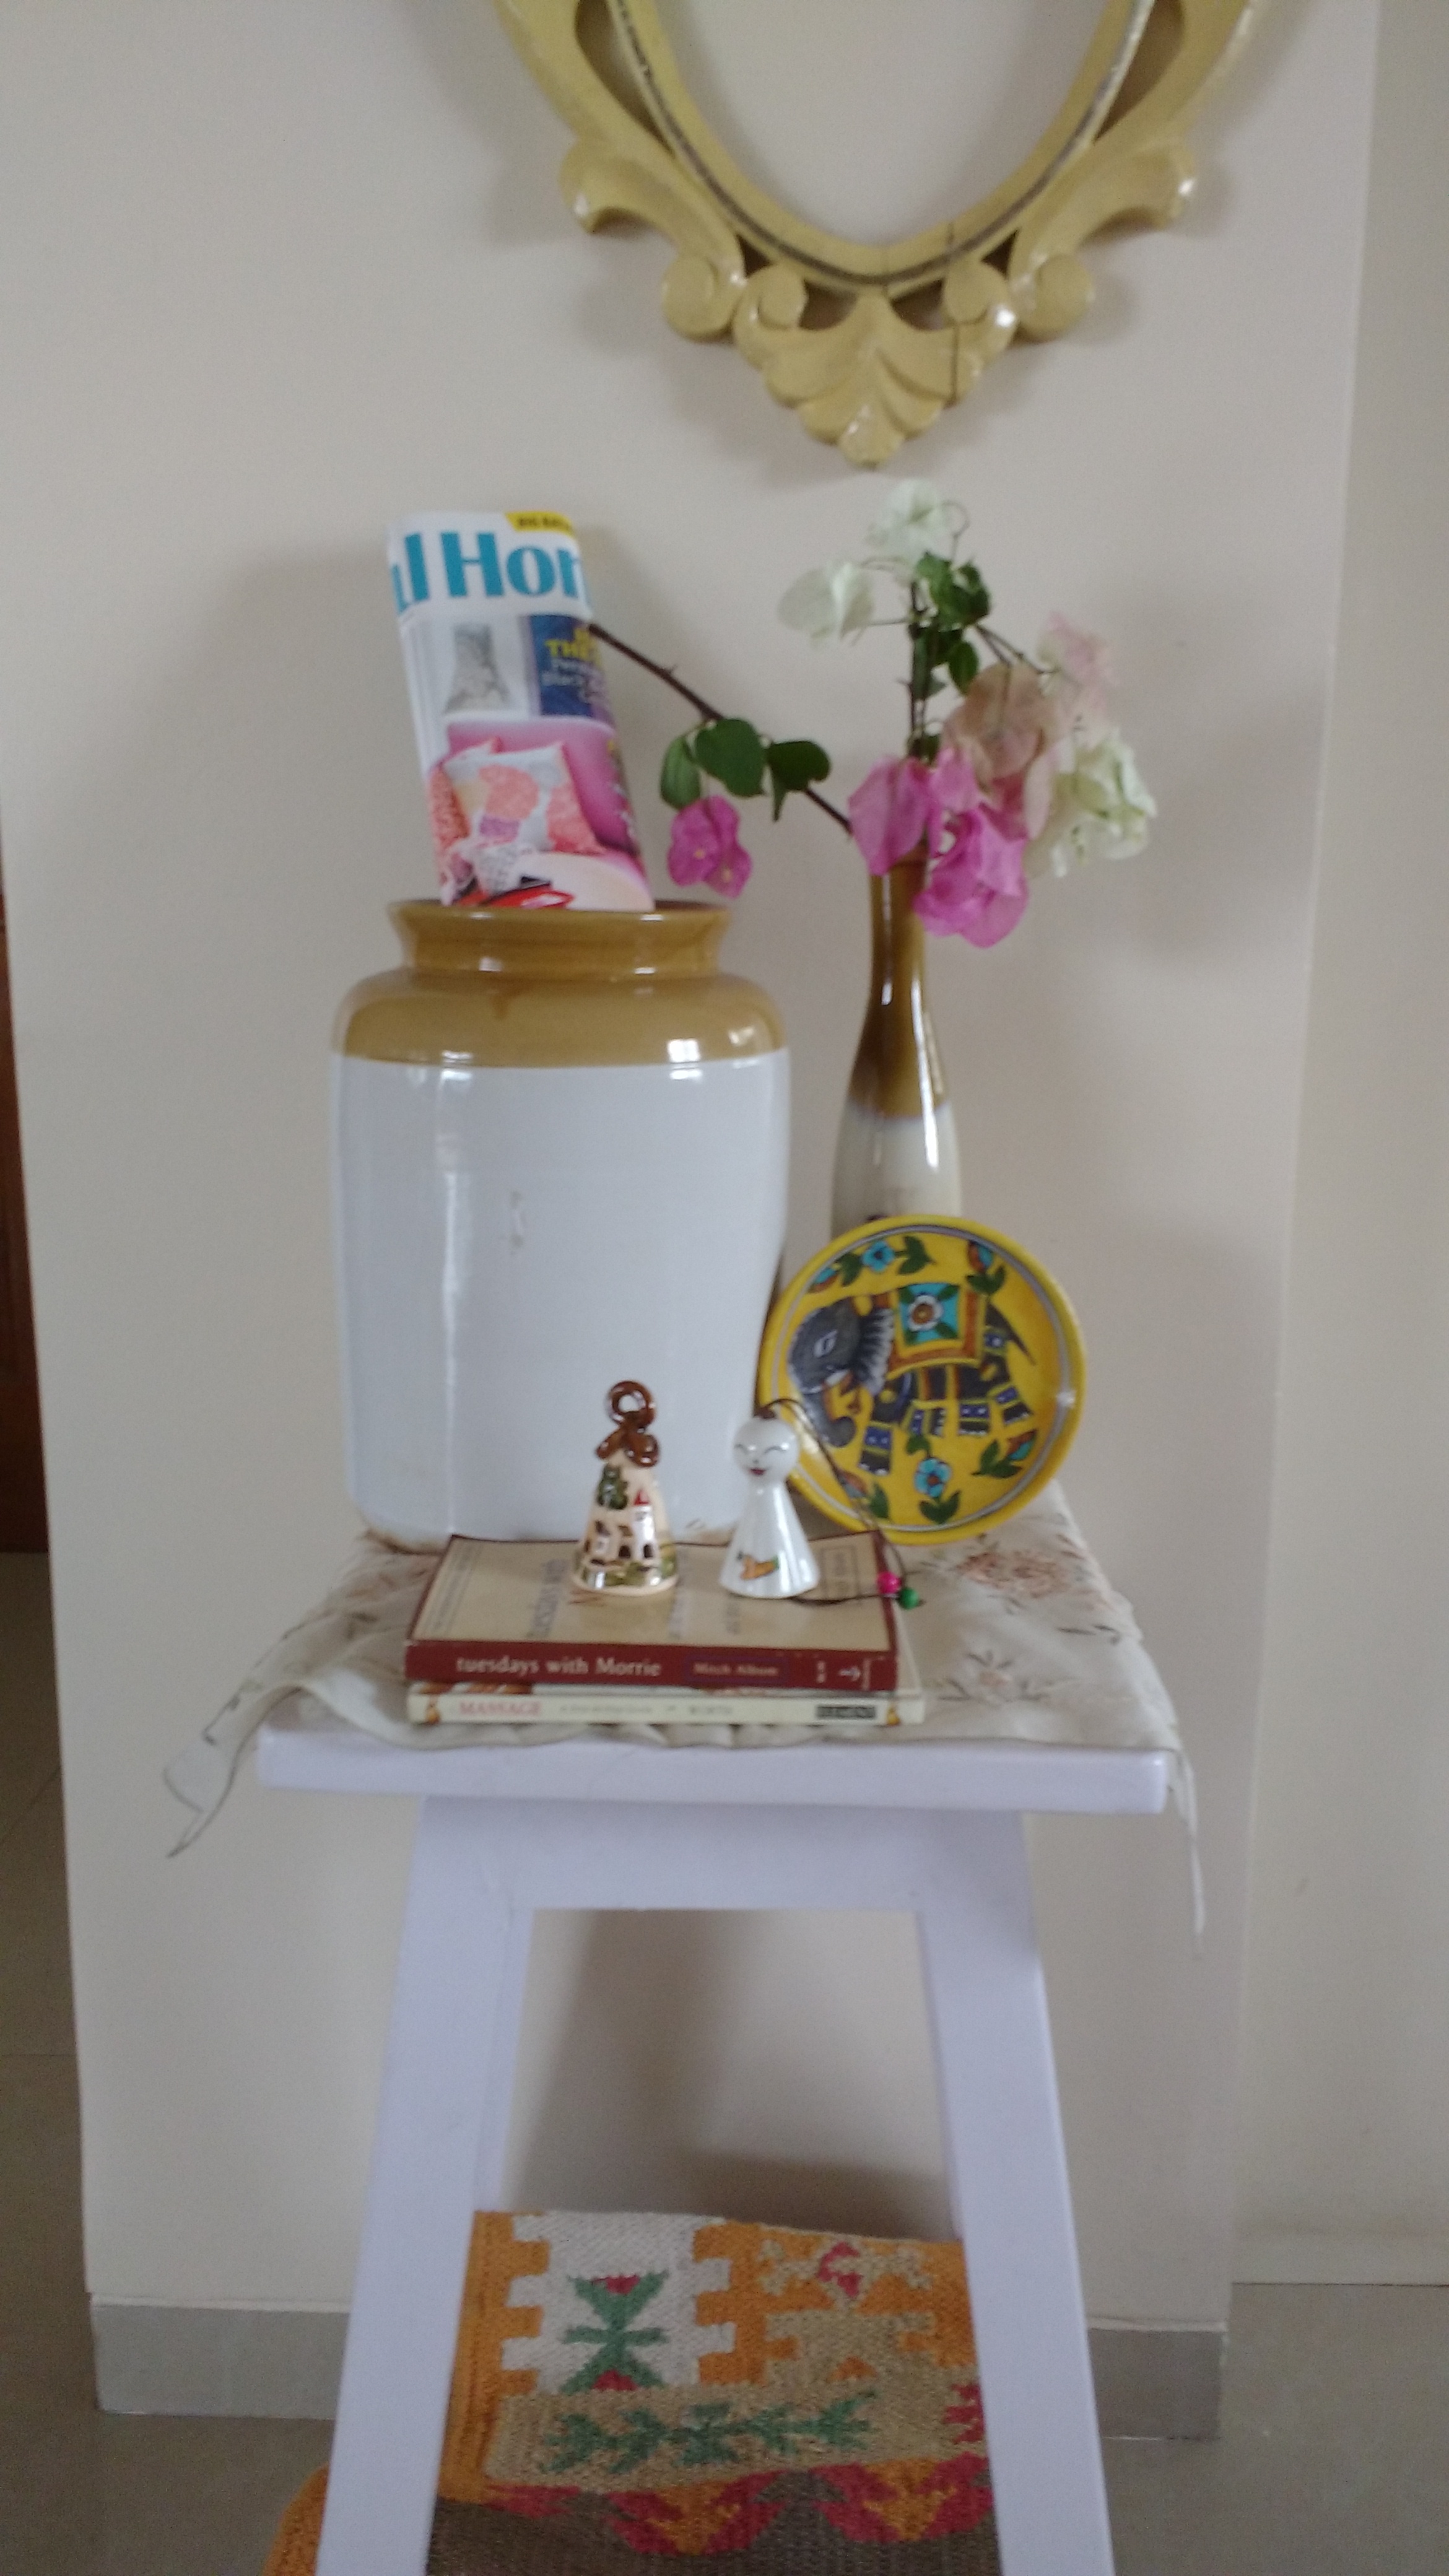 barni and flower vase